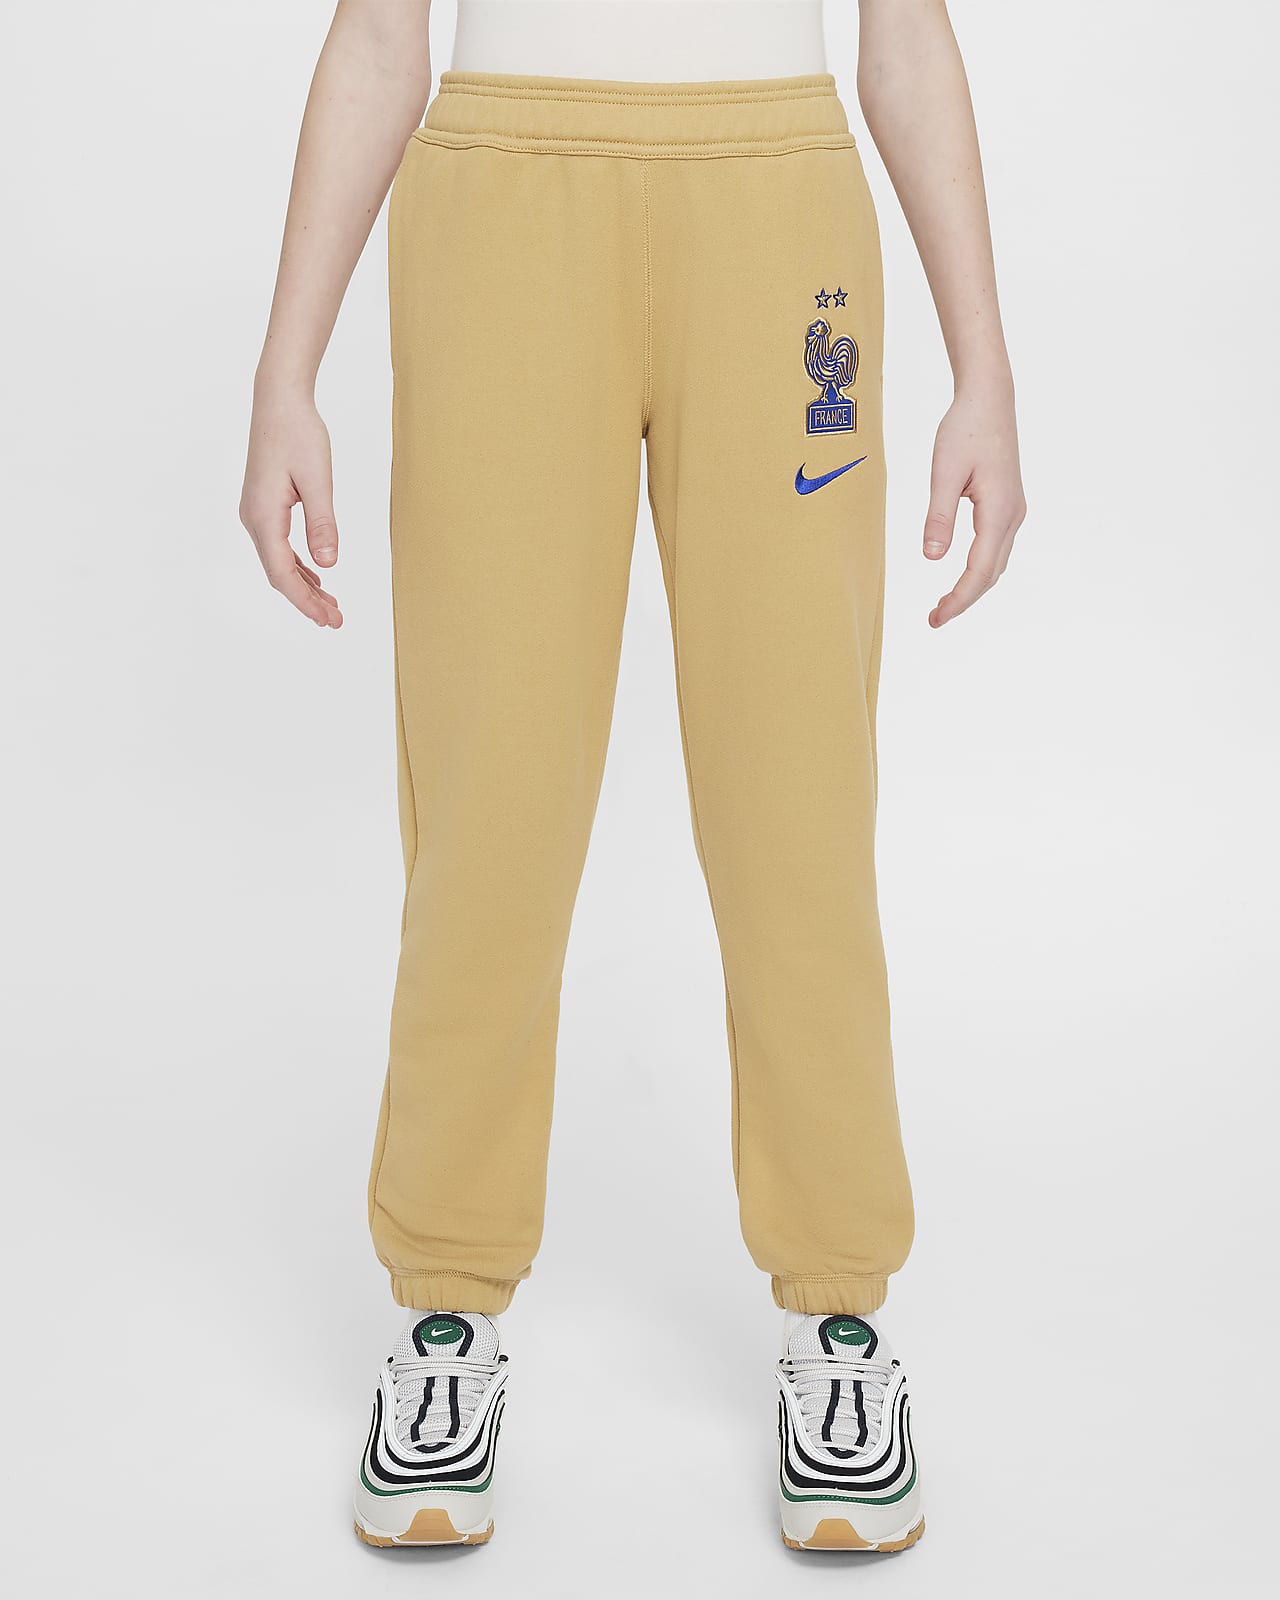 FFF Pantalons de futbol Nike Air - Nen/a